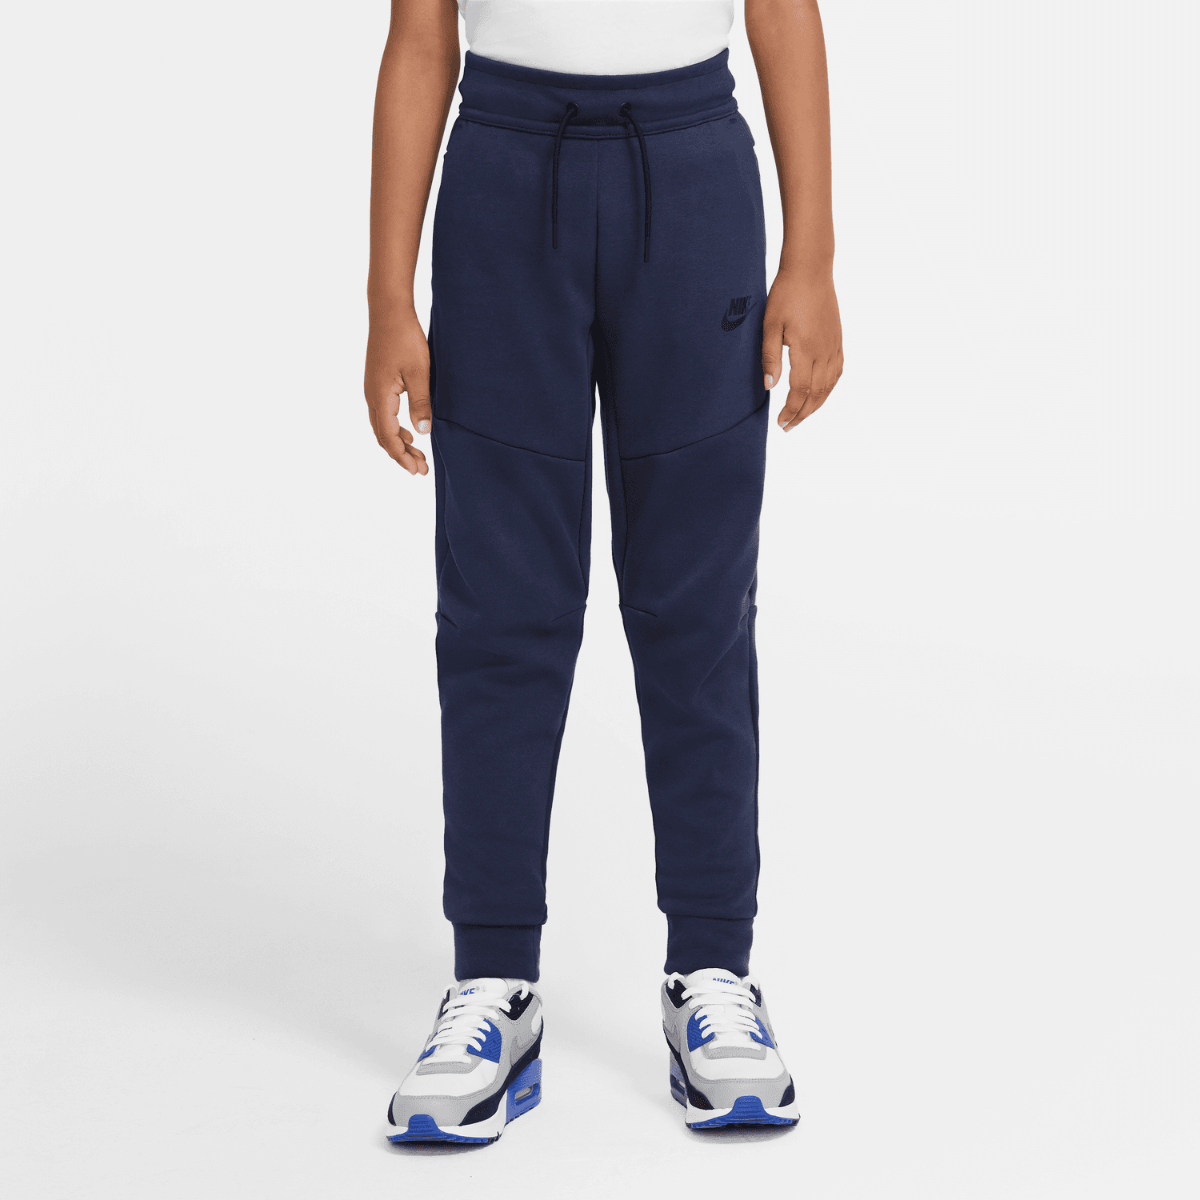 Pantalon jogging Nike Tech Fleece Junior - Bleu/Noir